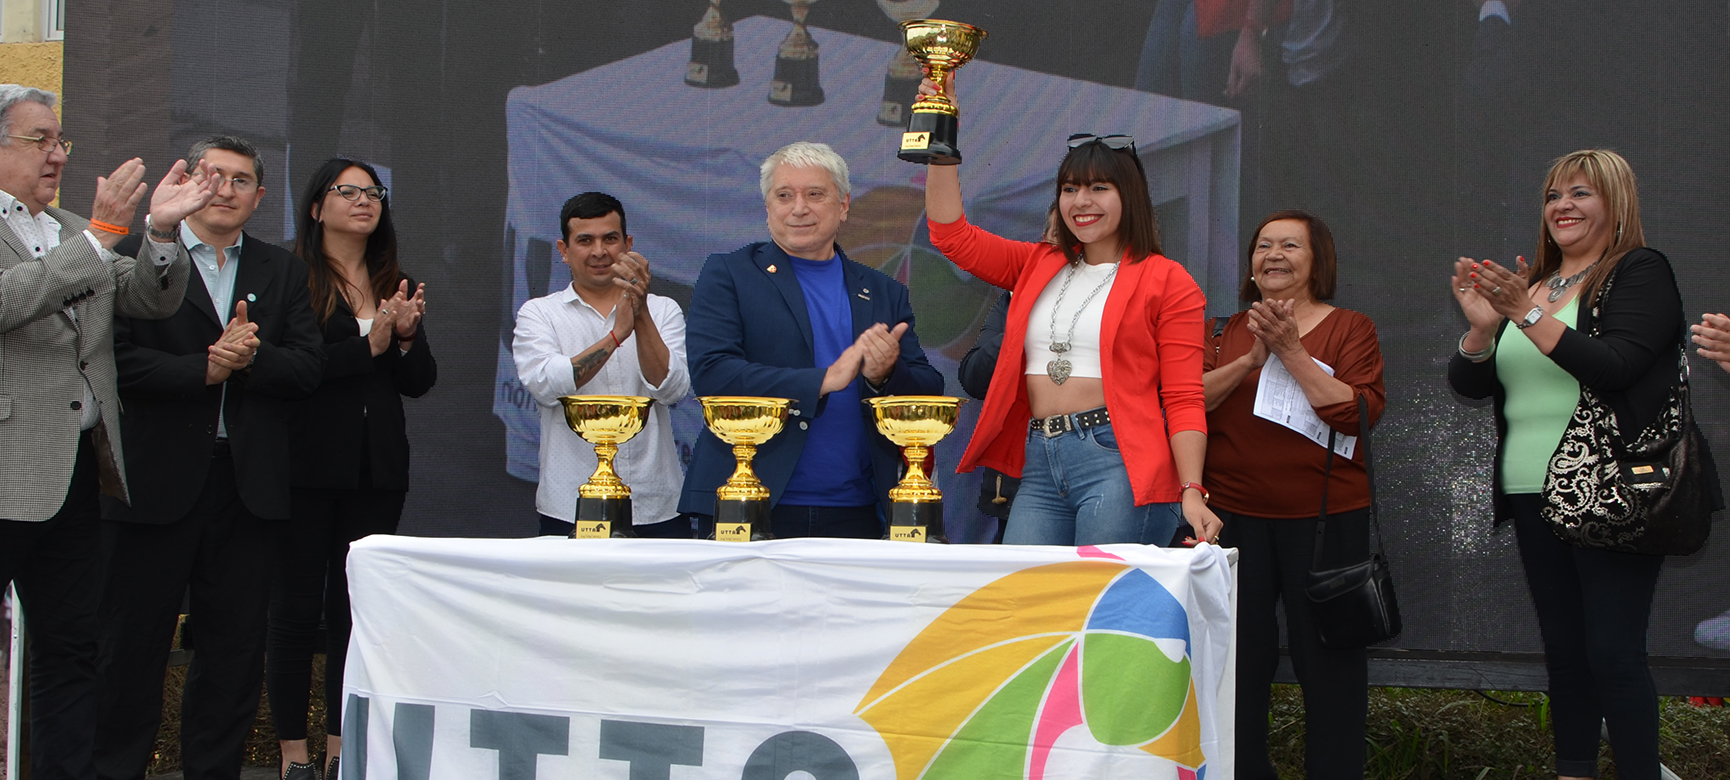 La Copa UTTA y Carlos Felice en la fiesta tucumana